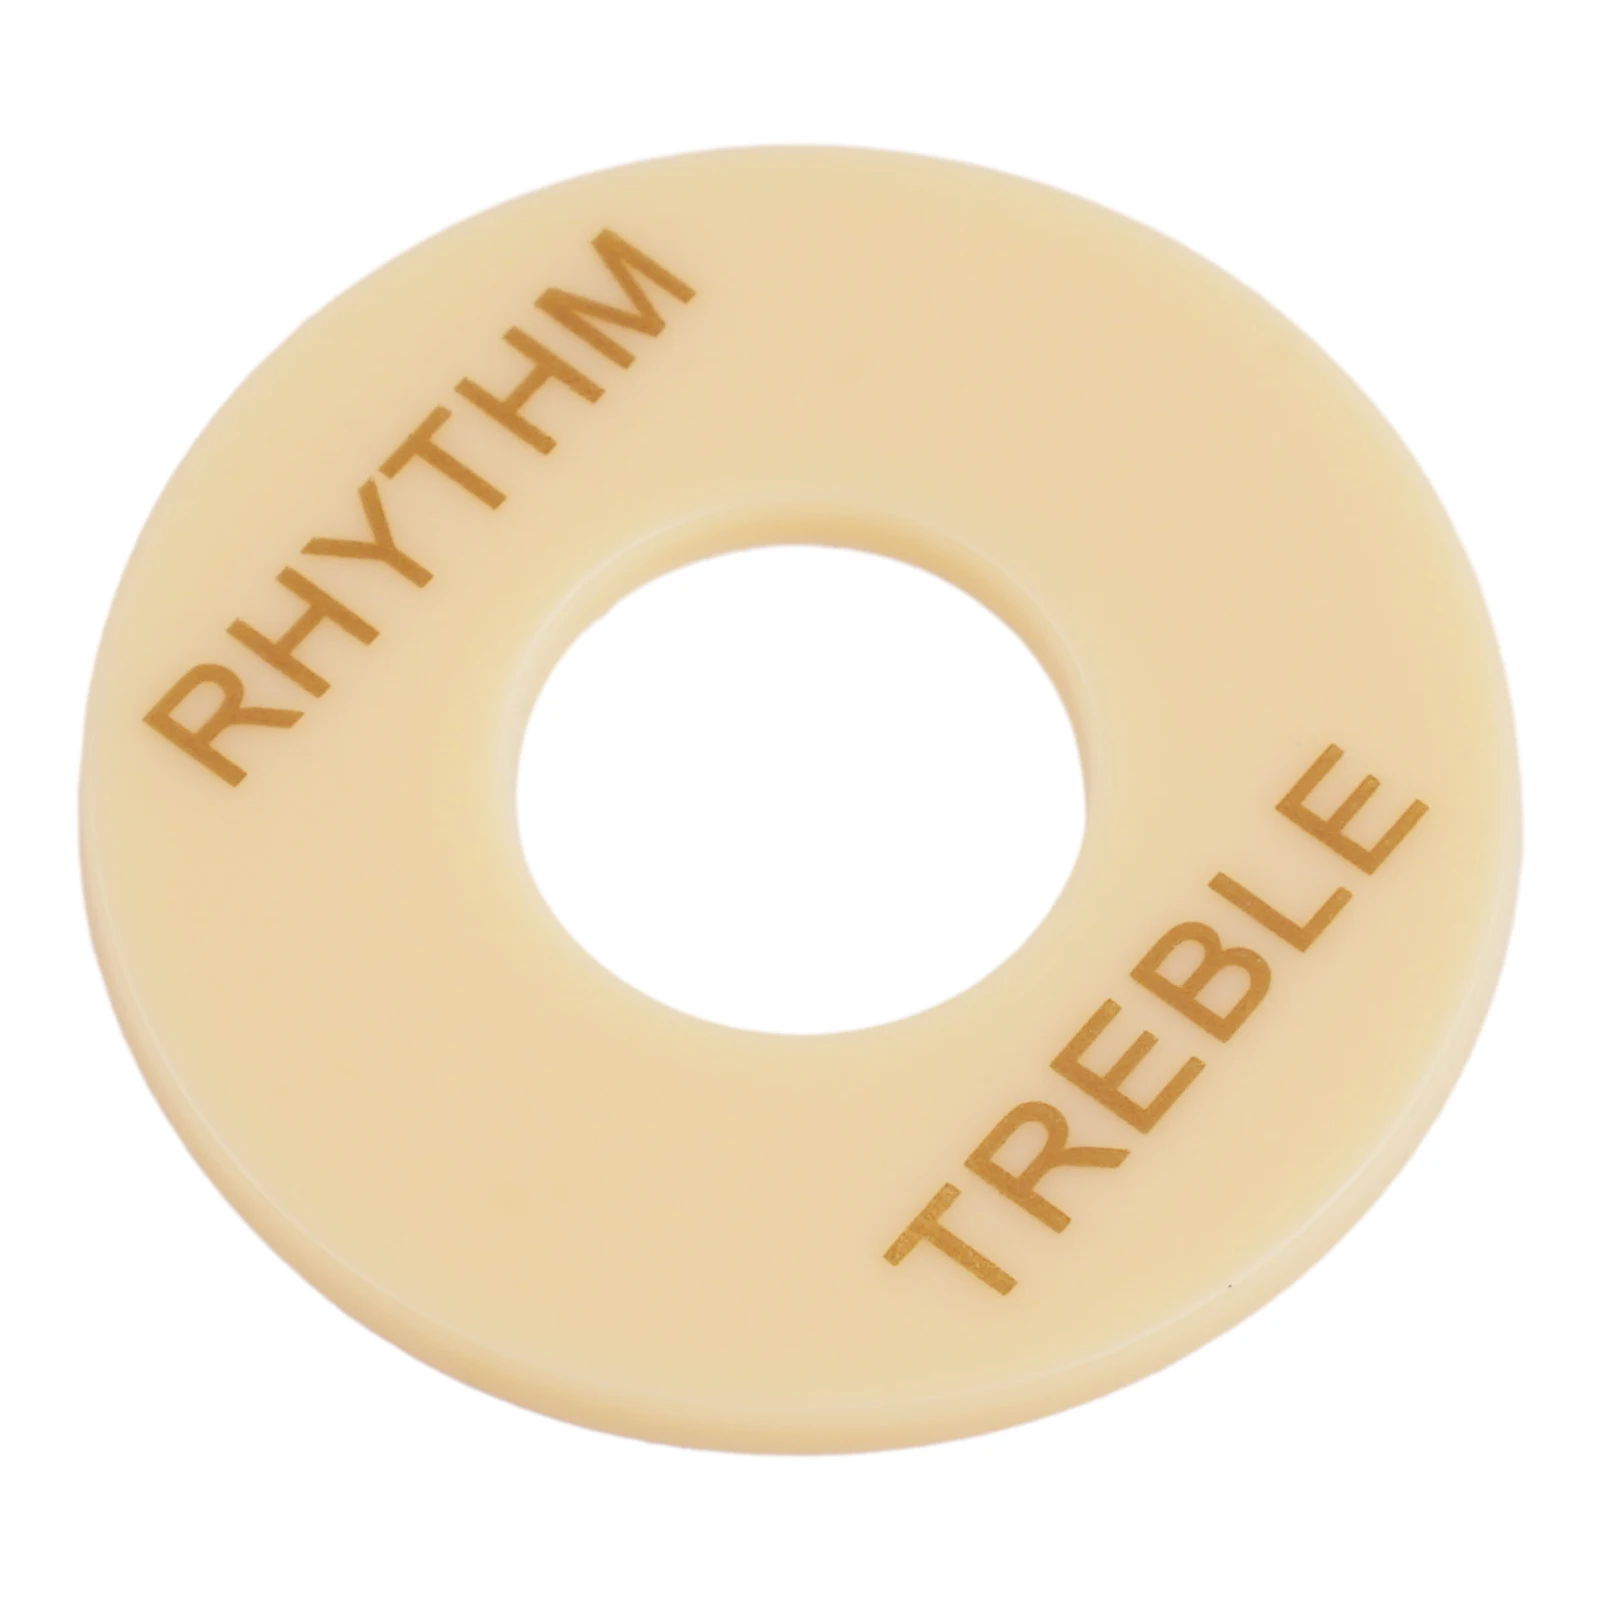 Rhythm/treble selektor spínač prsten pro gibson les pavel kytara three-speed spínač dávat pozor talíř blok prsten selektor barvivo